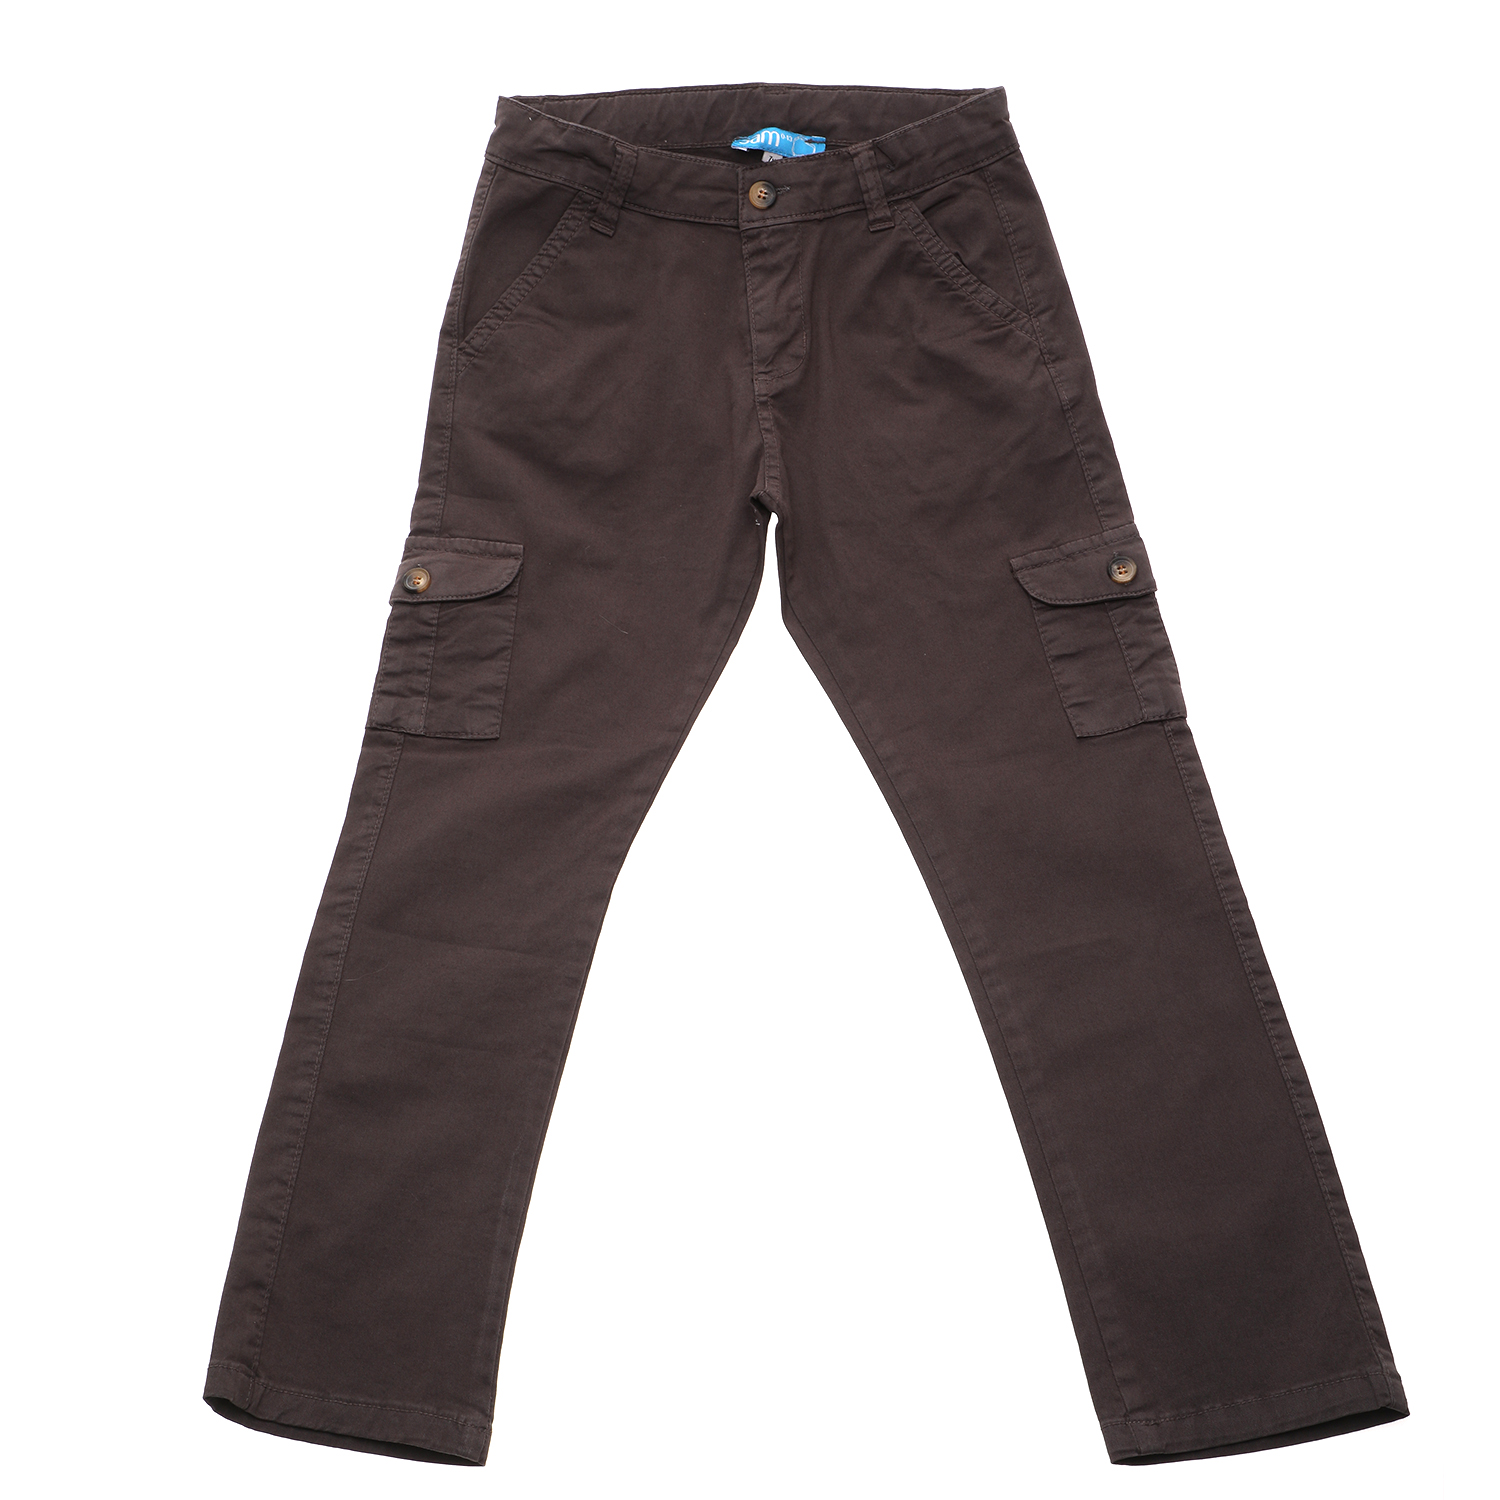 Παιδικά/Boys/Ρούχα/Παντελόνια SAM 0-13 - Παιδικό παντελόνι cargo SAM 0-13 χακί